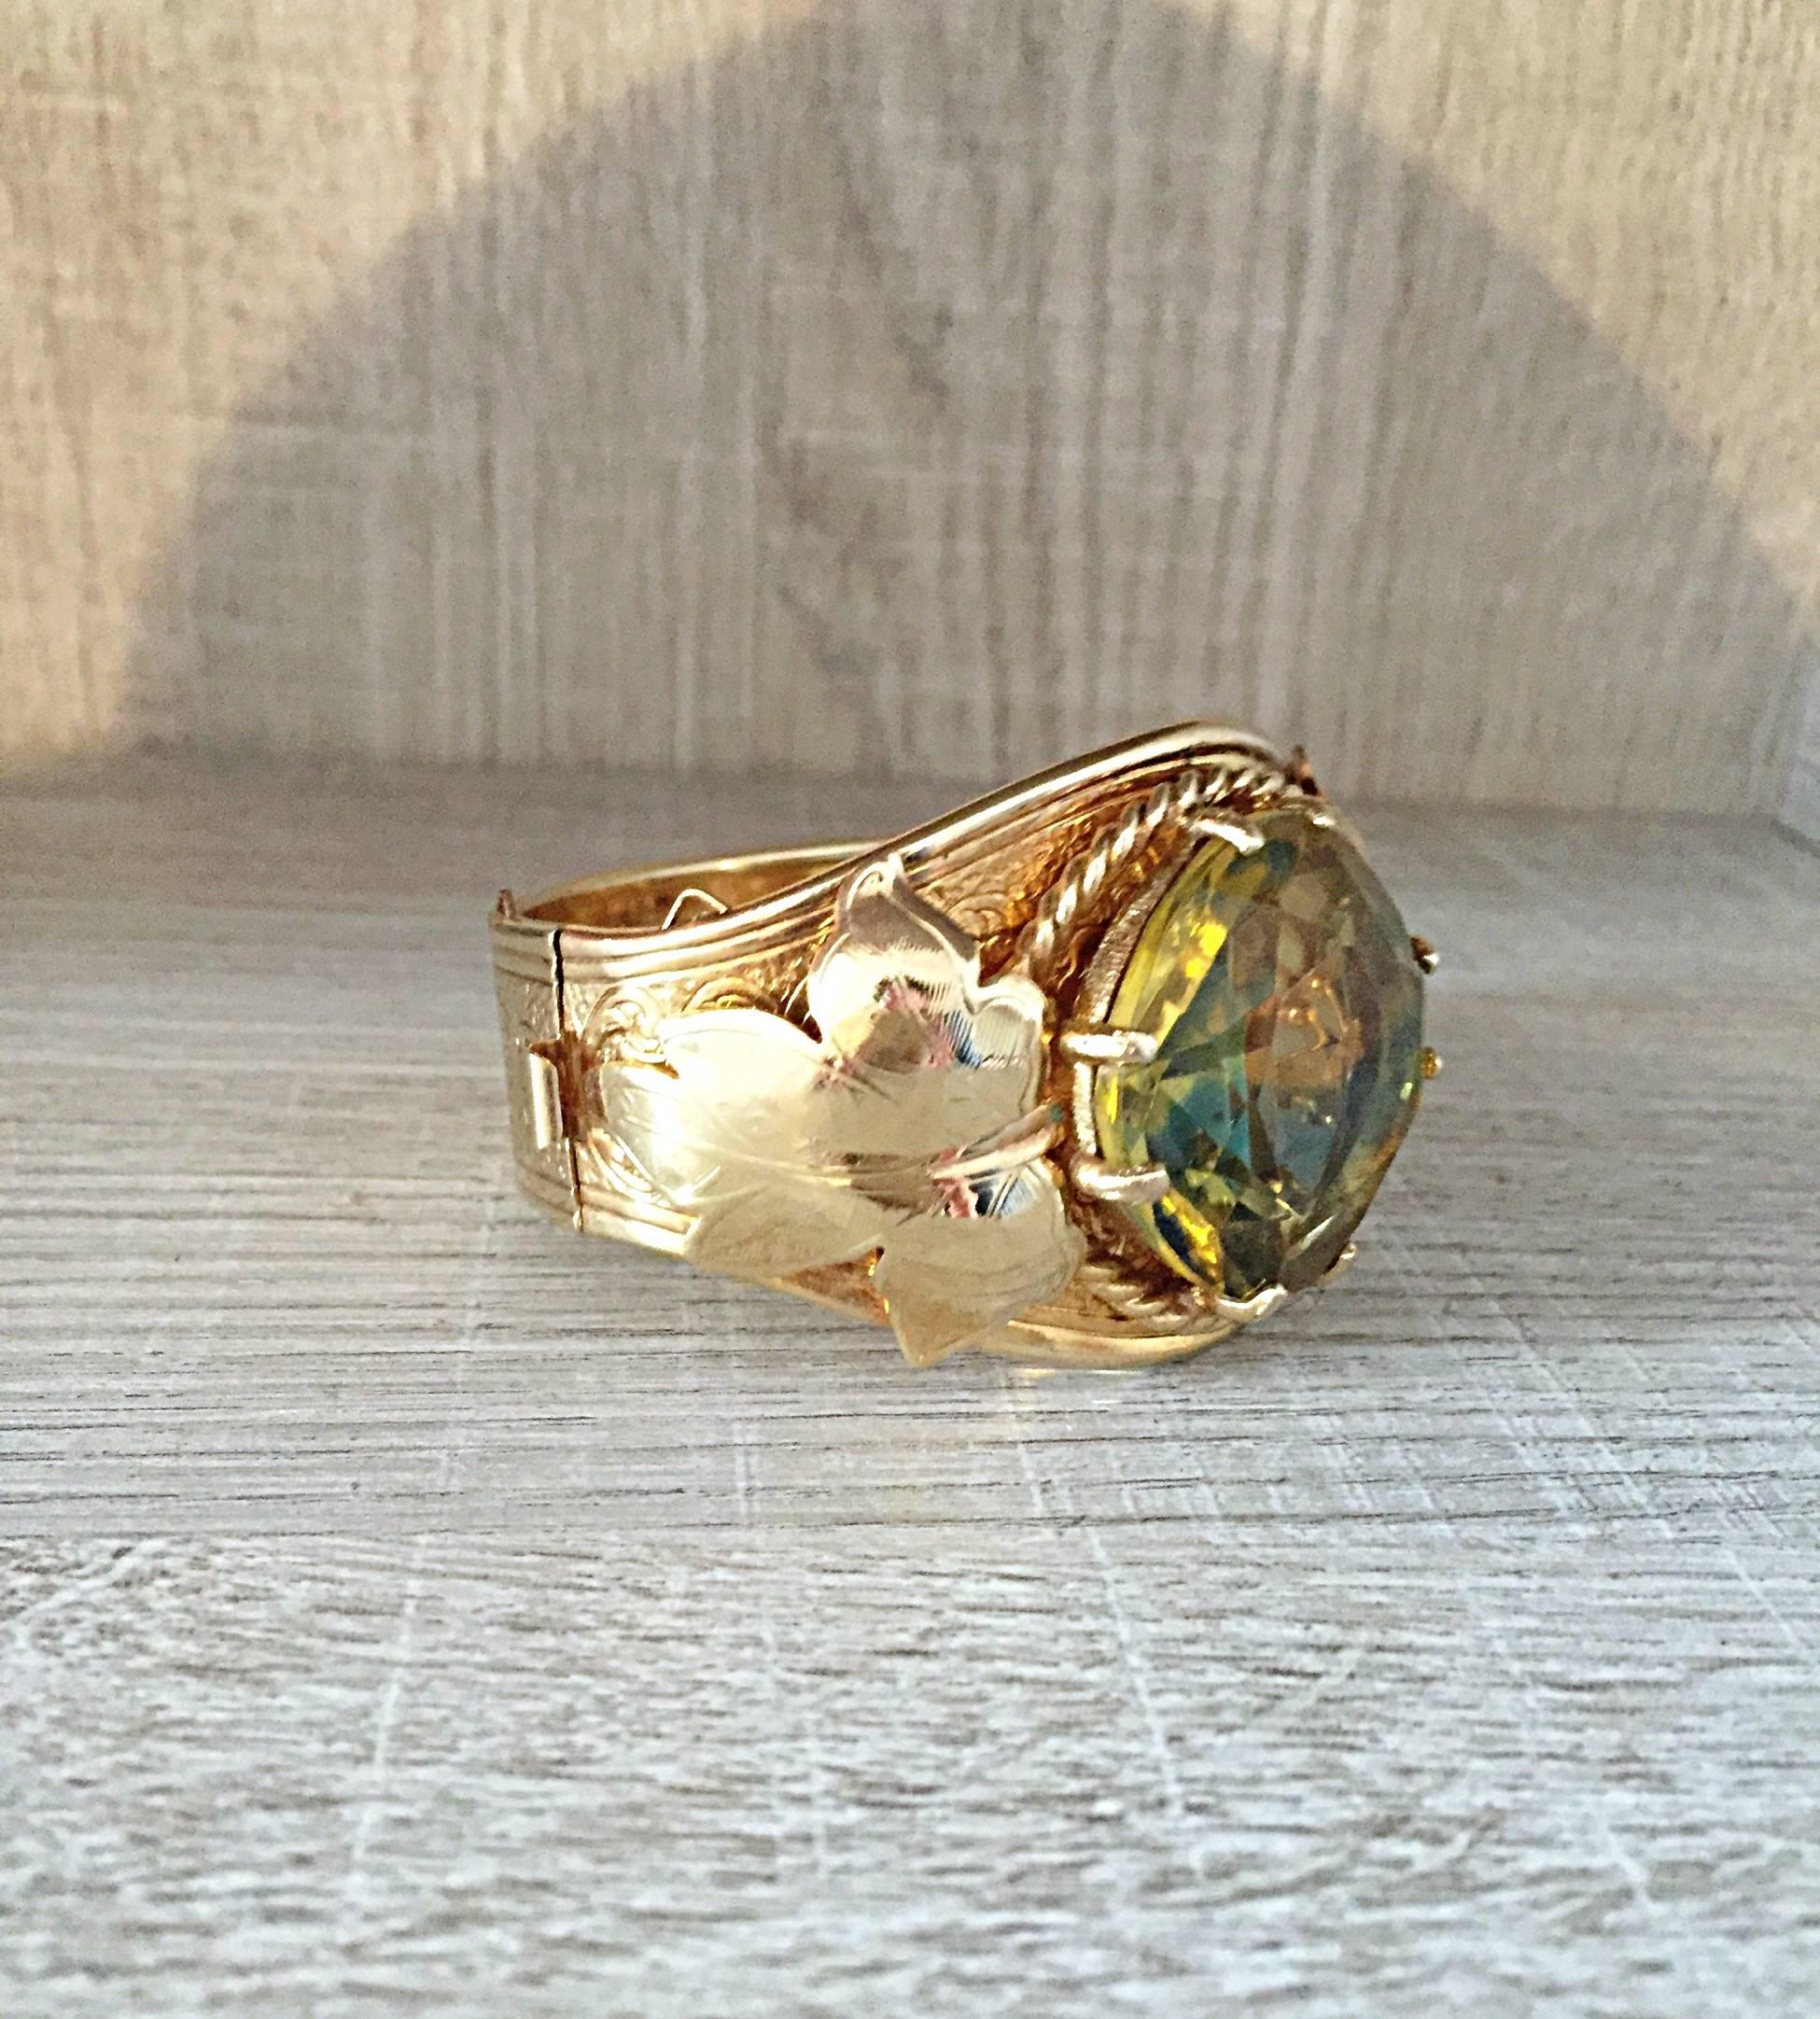 Magnifique bracelet métallique à charnière en or Sarah Coventry des années 70 avec une grande pierre jaune verte. Le bracelet mesure 2 1/4 pouces de diamètre en position fermée.  Il a une pierre de 1 1/4 pouce de diamètre qui est facettée. La pierre